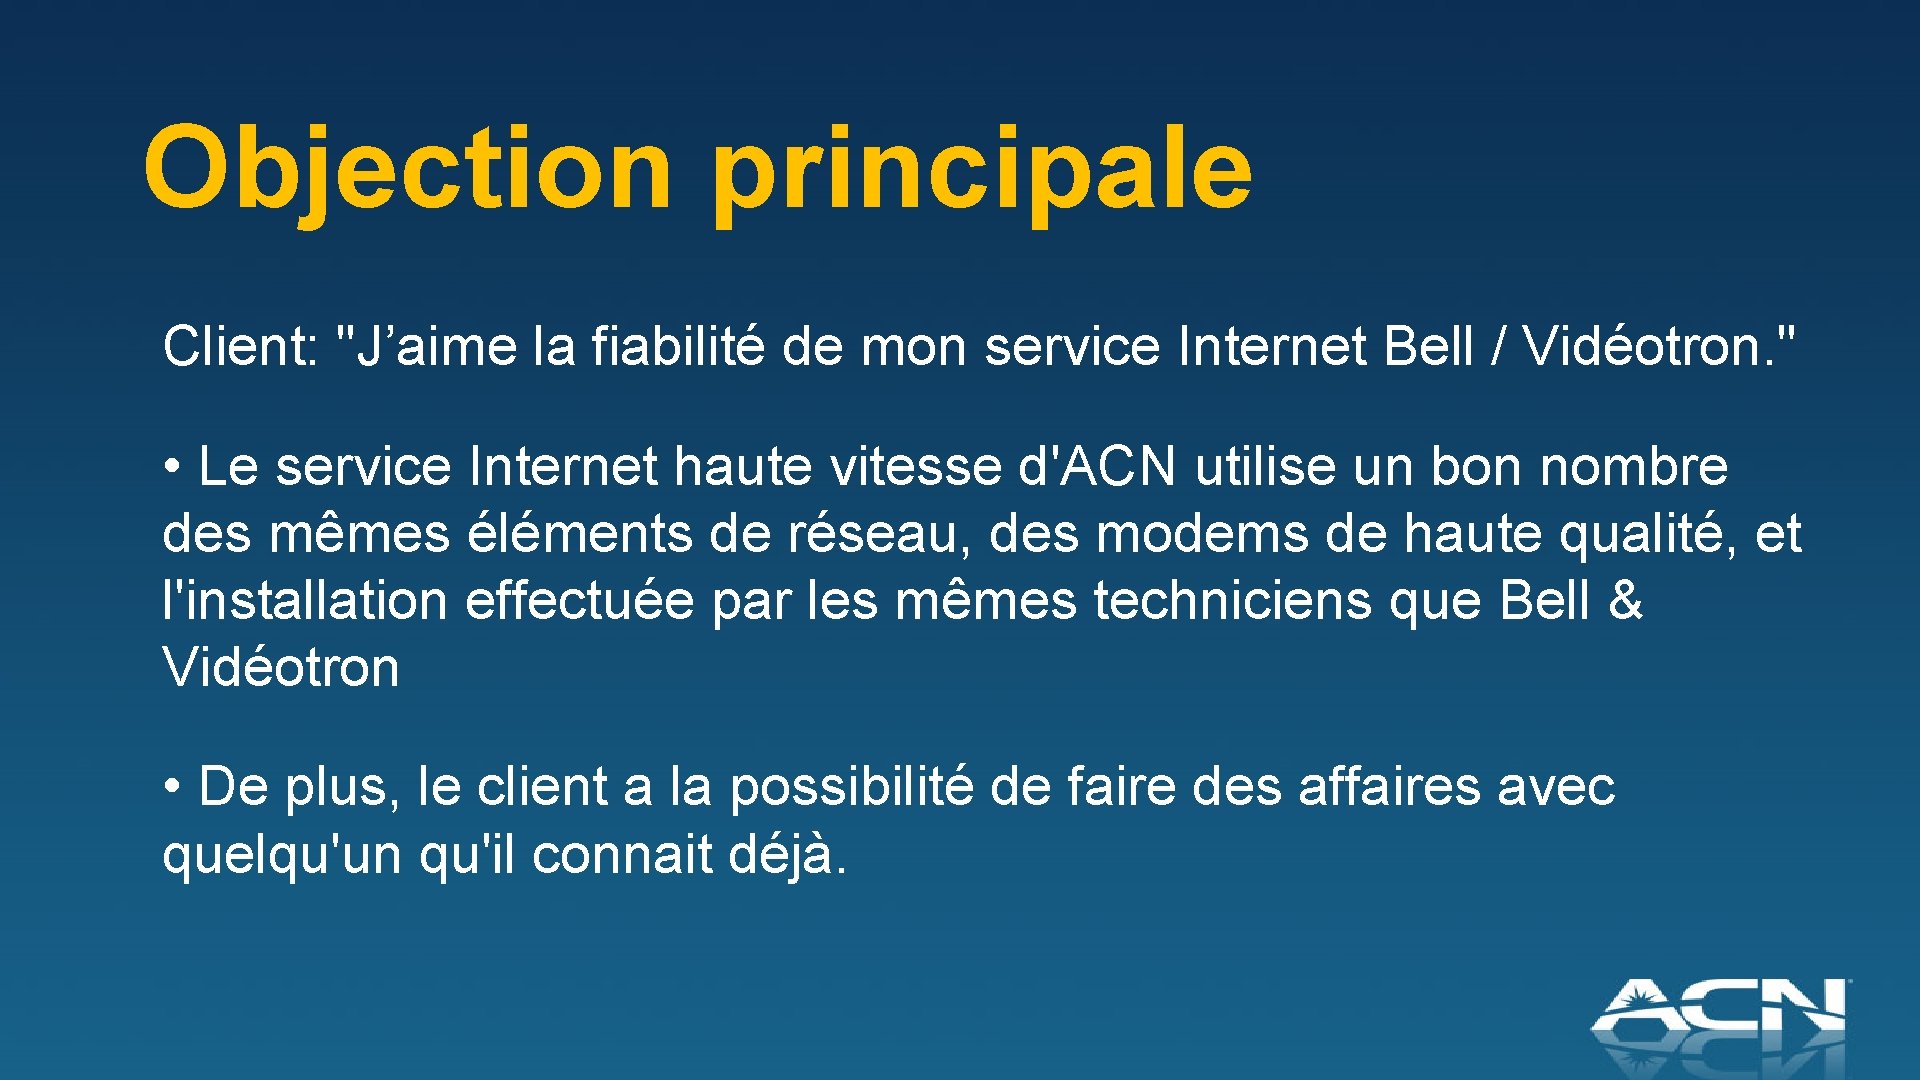 Objection principale Client: "J’aime la fiabilité de mon service Internet Bell / Vidéotron. "